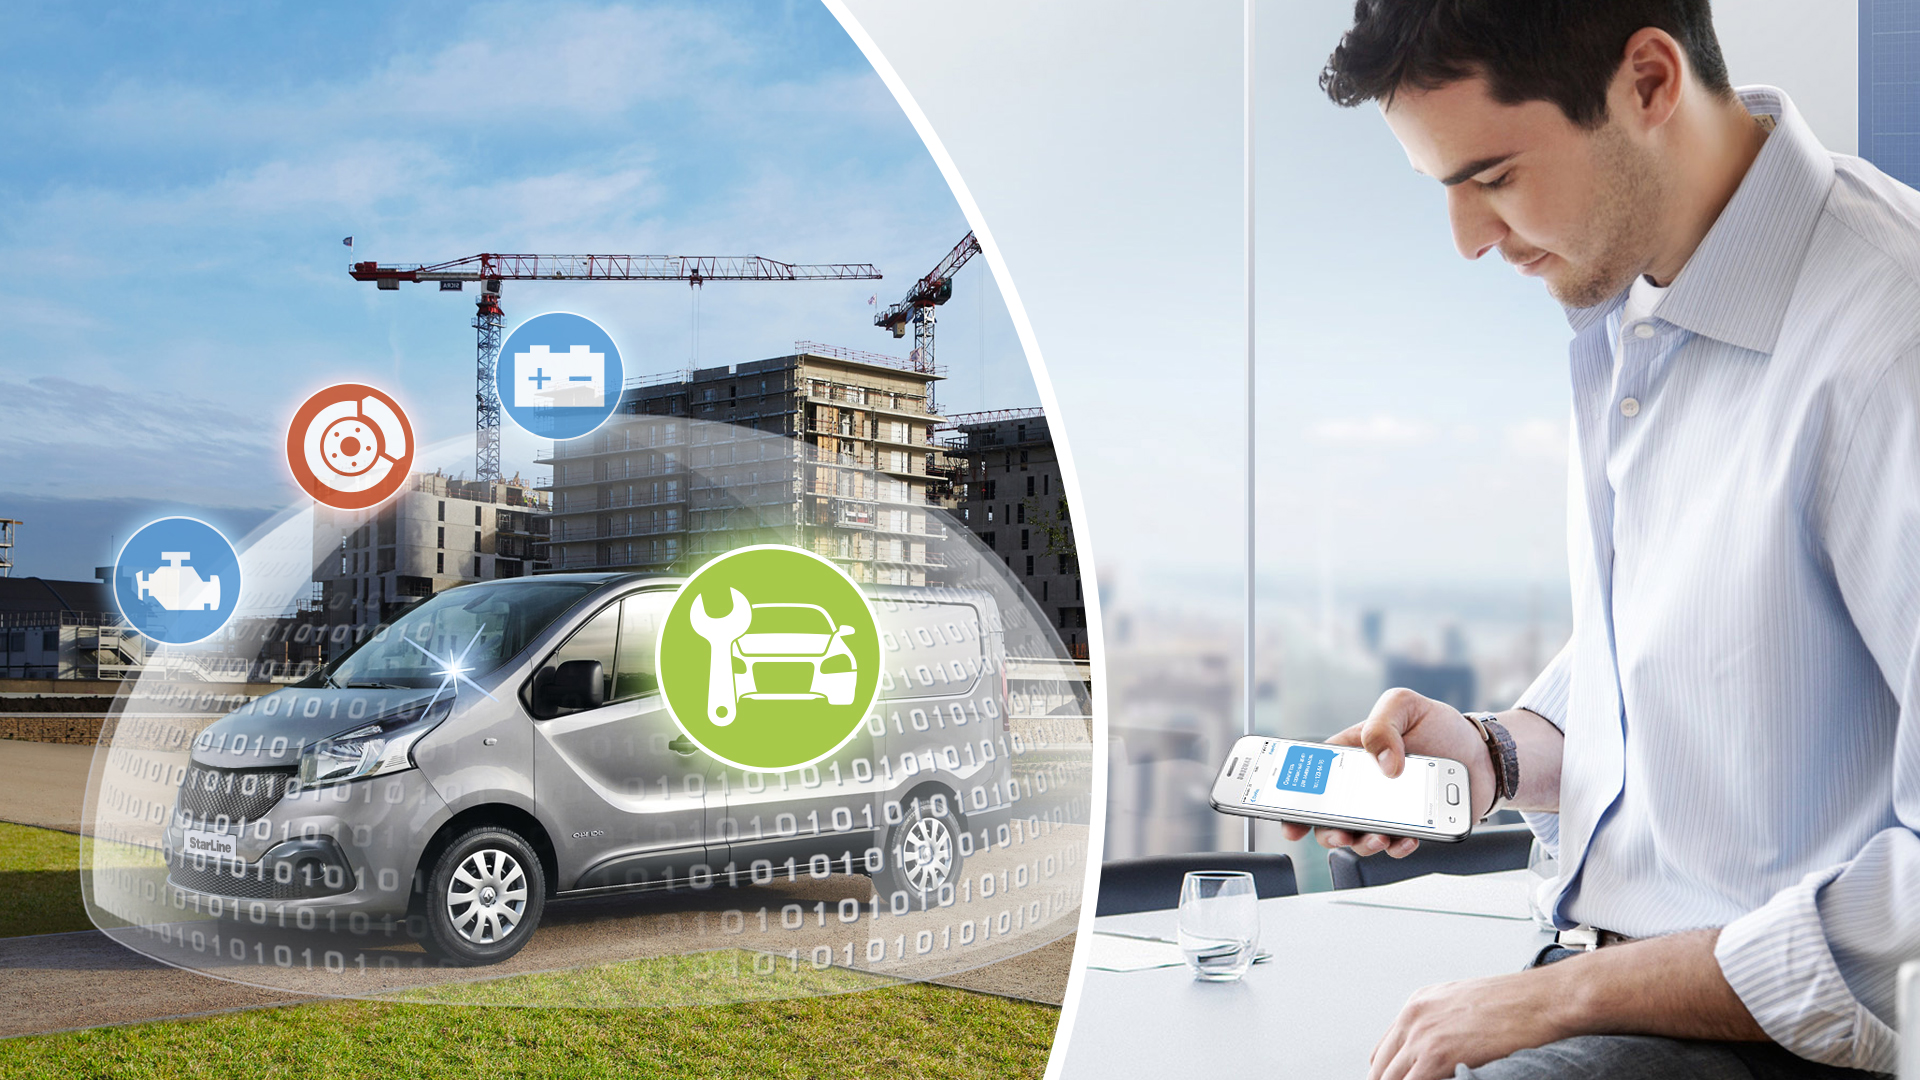 Спутниковая охранная система для автомобиля: Сигнализация на автомобиль, защита машин от угона - купить противоугонную систему, цены на системы безопасности